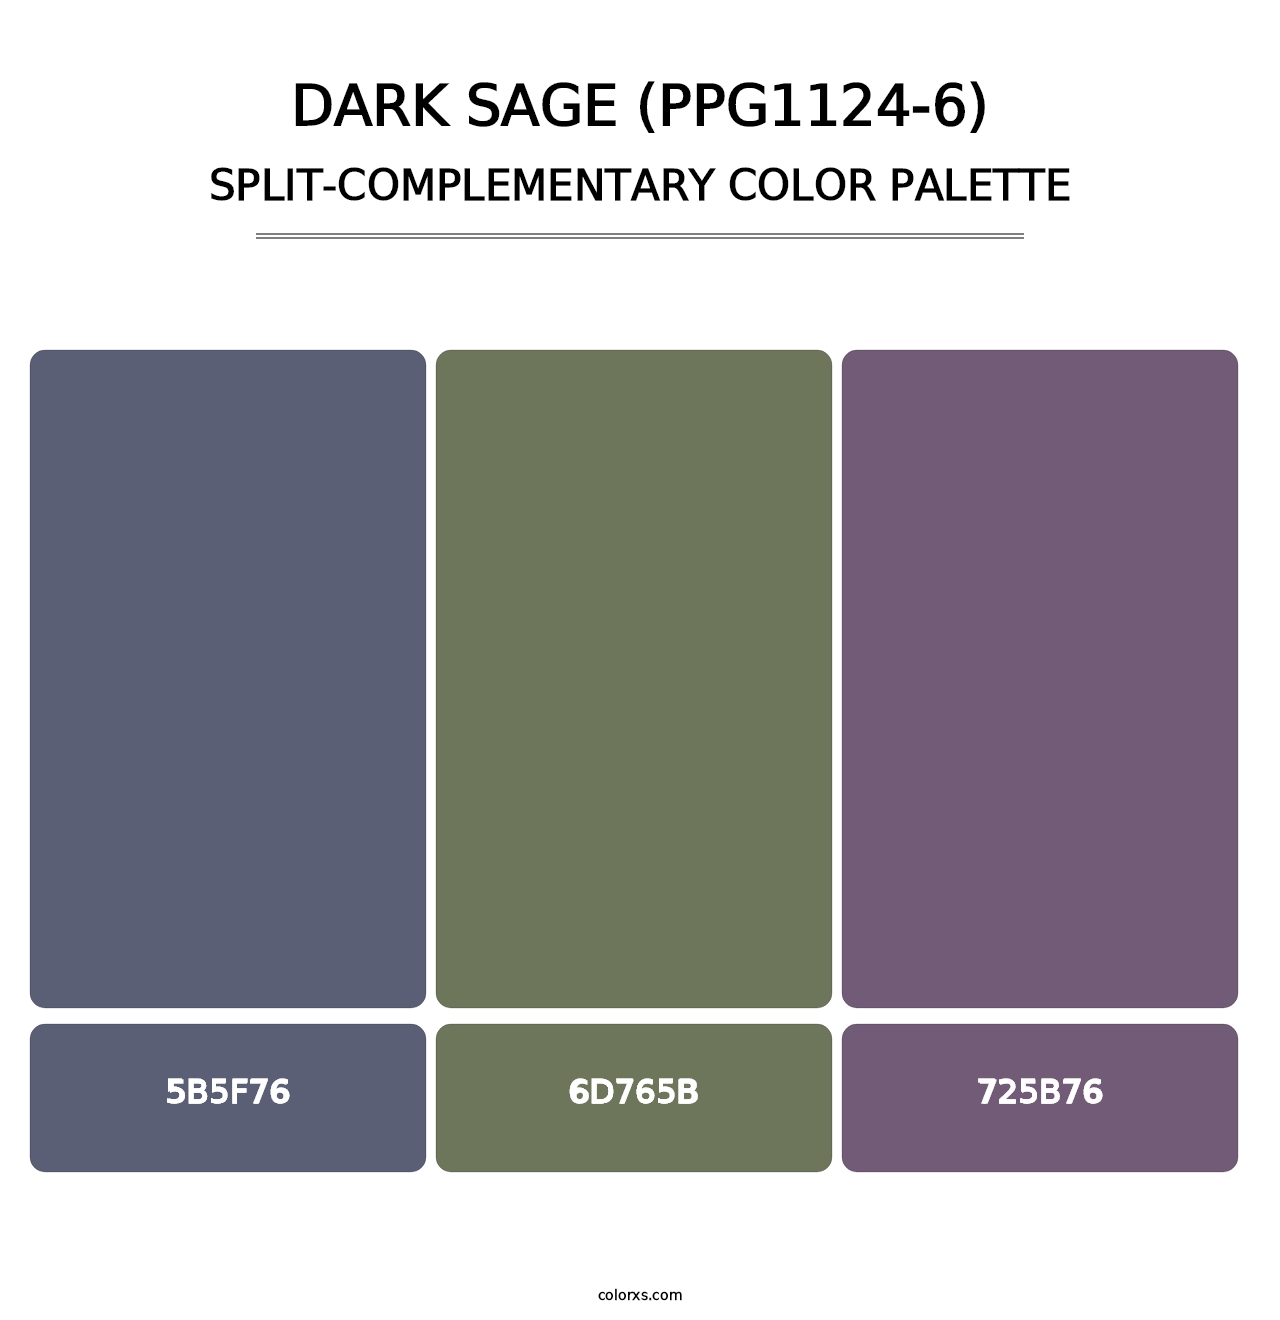 Dark Sage (PPG1124-6) - Split-Complementary Color Palette